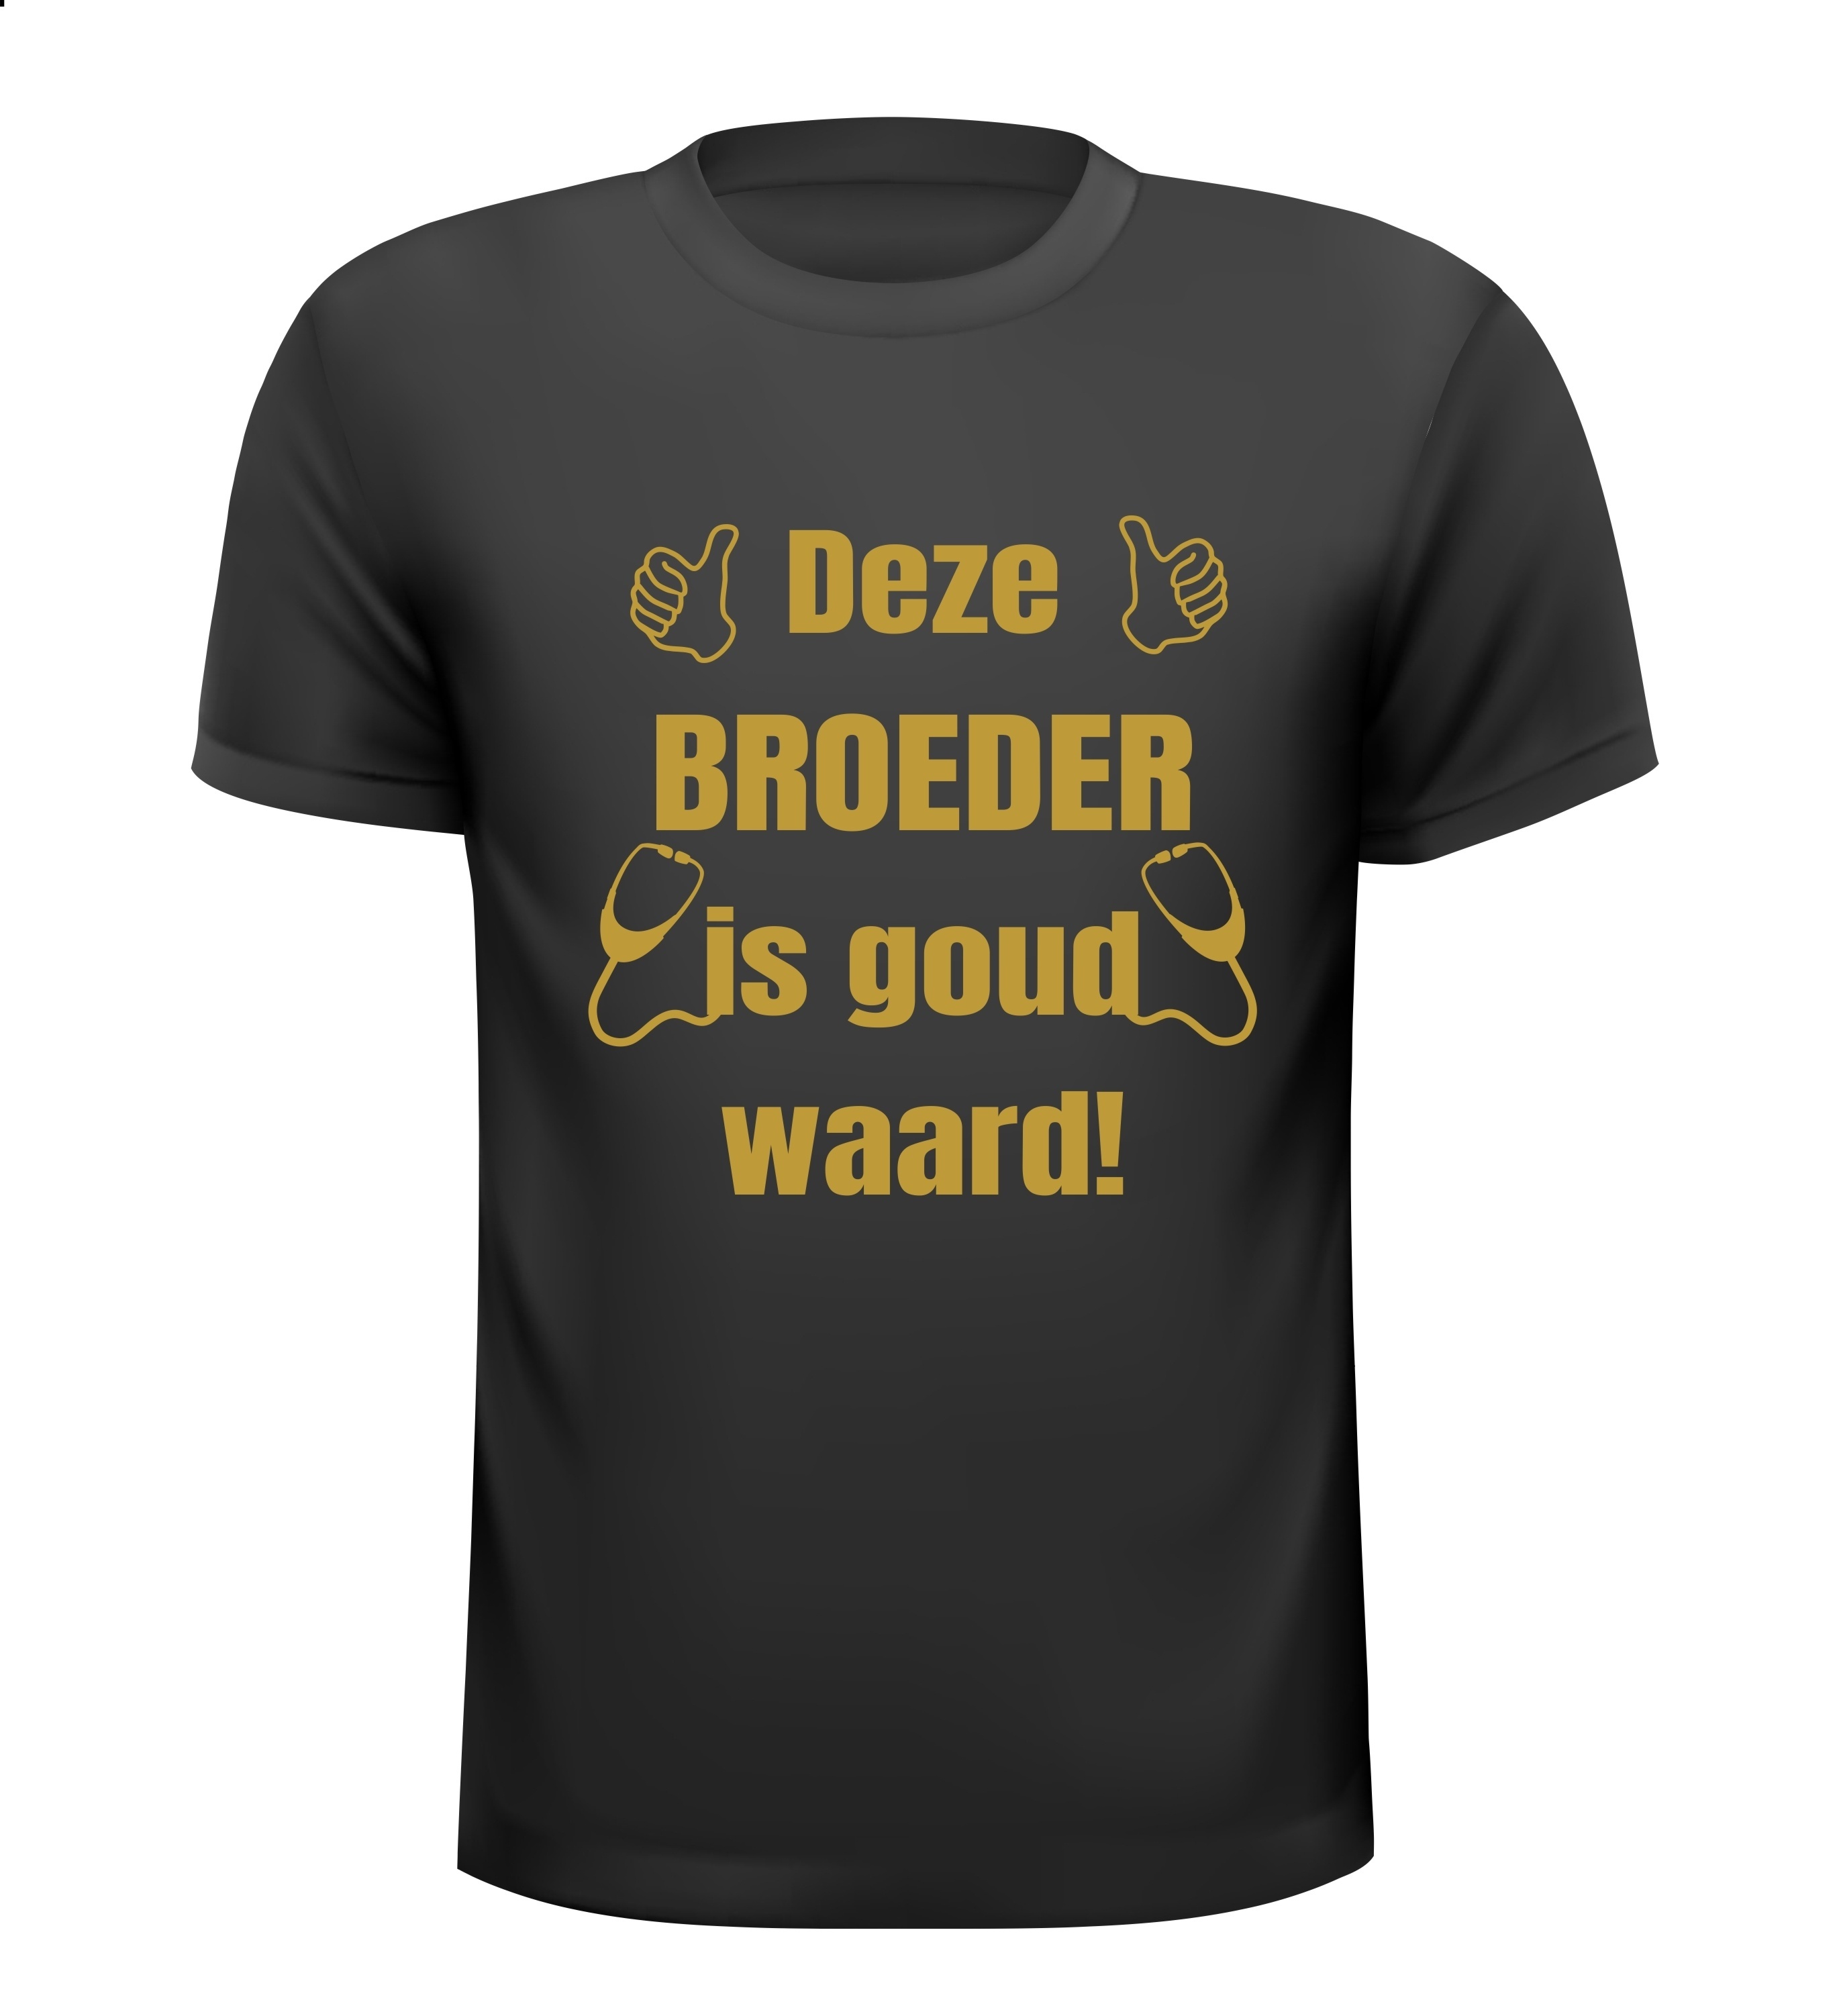 T-shirt waardering broeder bedankje gouden opdruk deze broeder is goud waard zorg kanjer